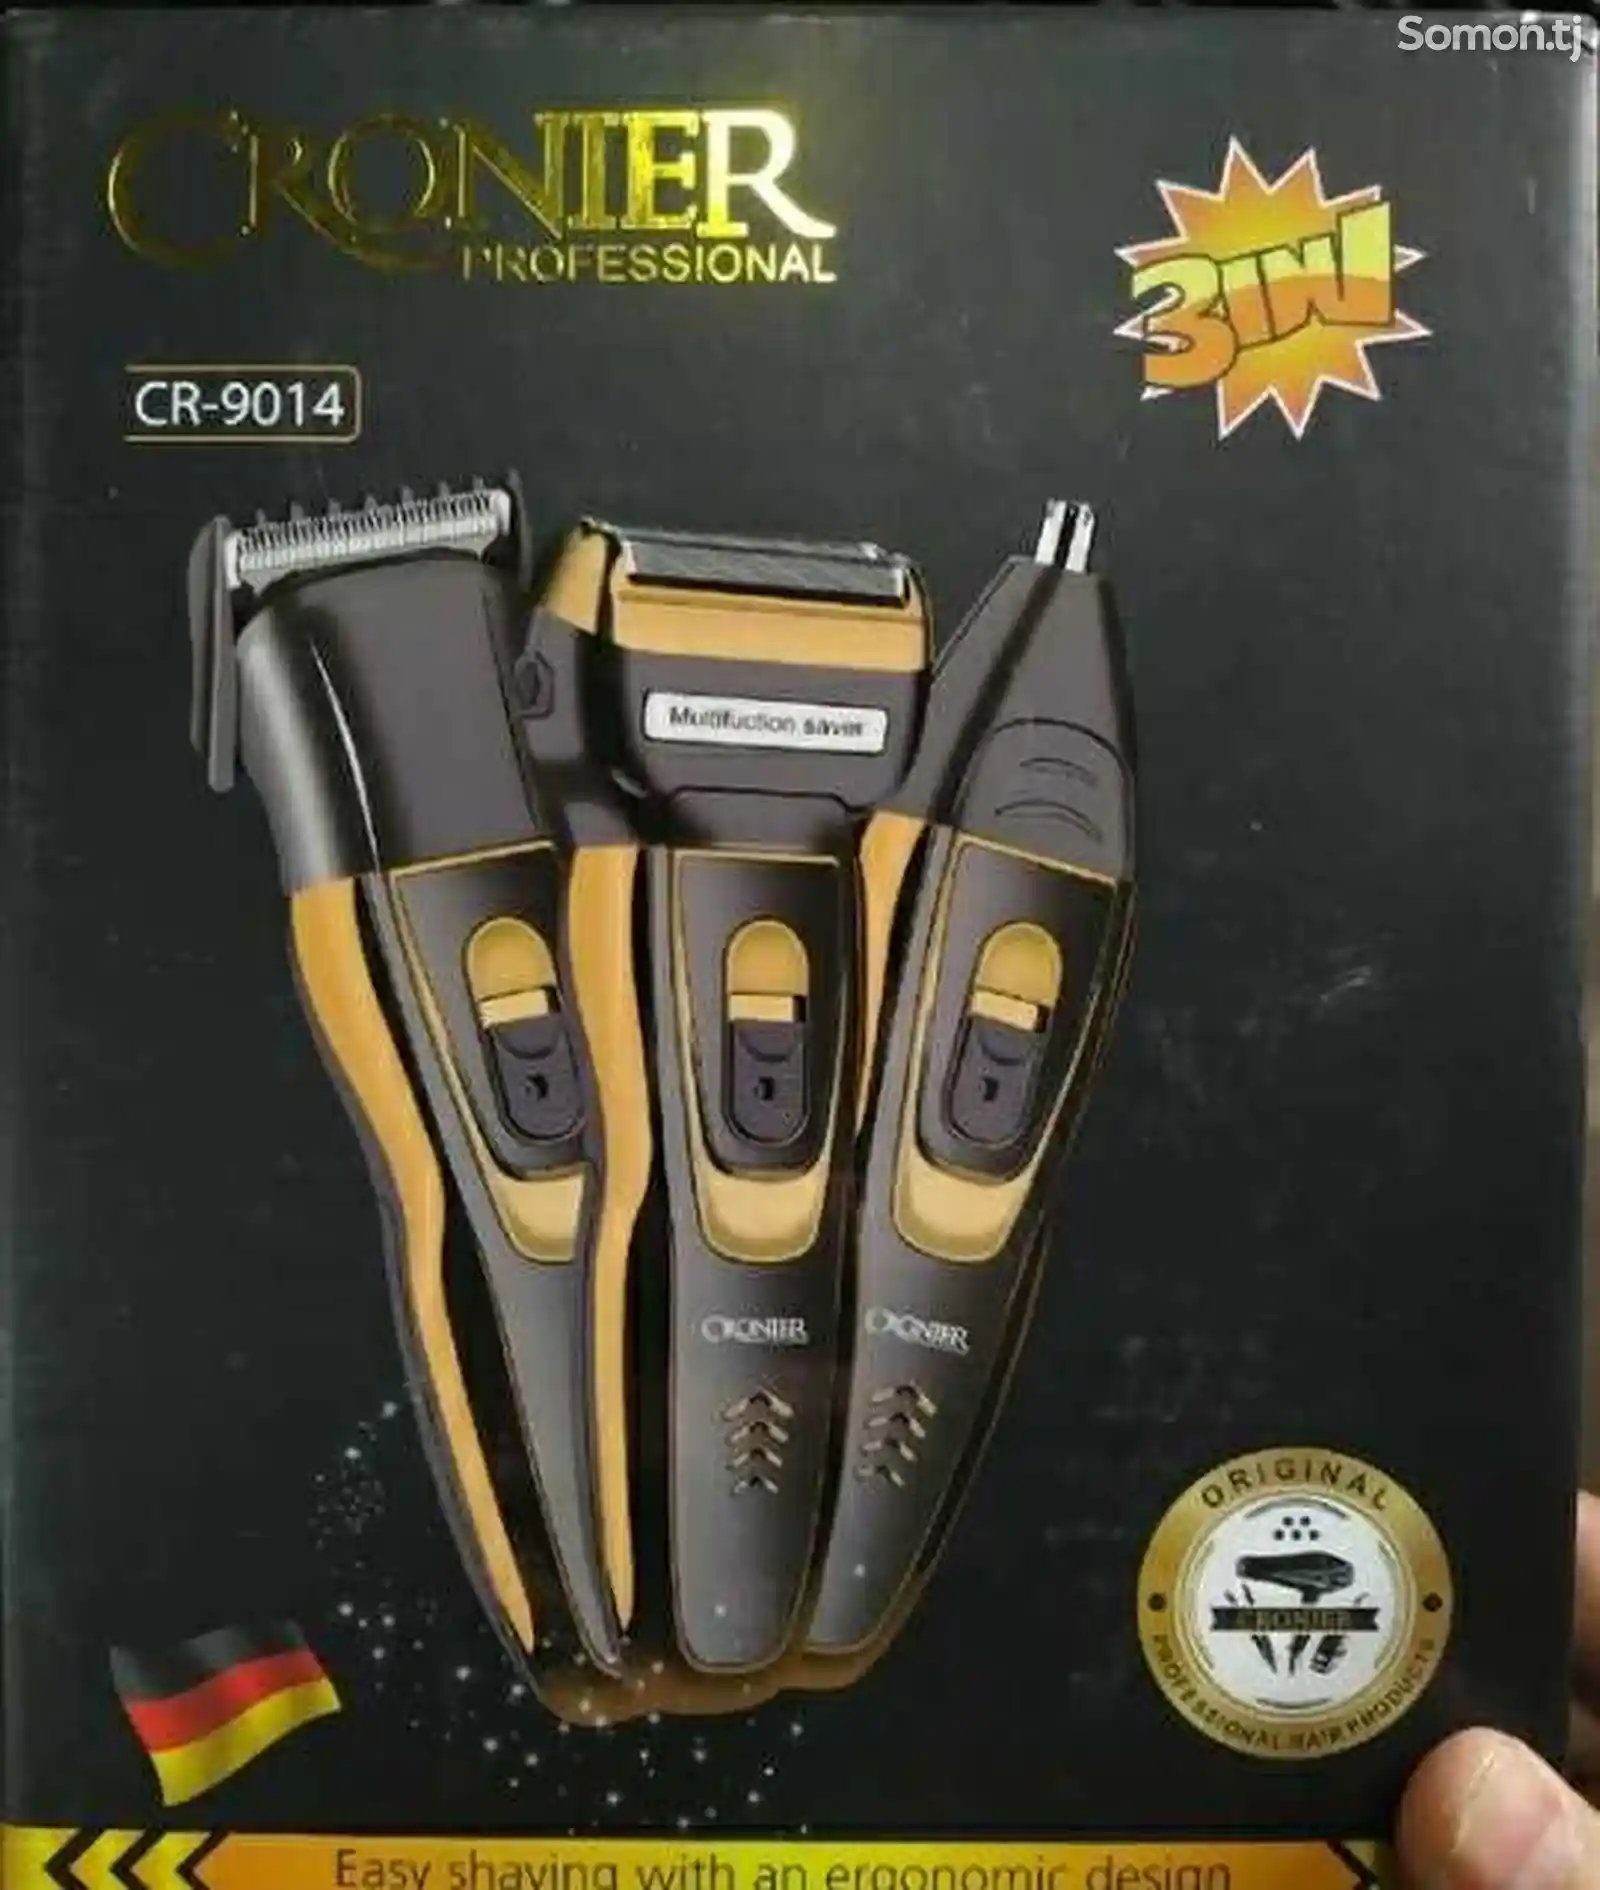 Триммер для стрижки волос Cronier CR-9014